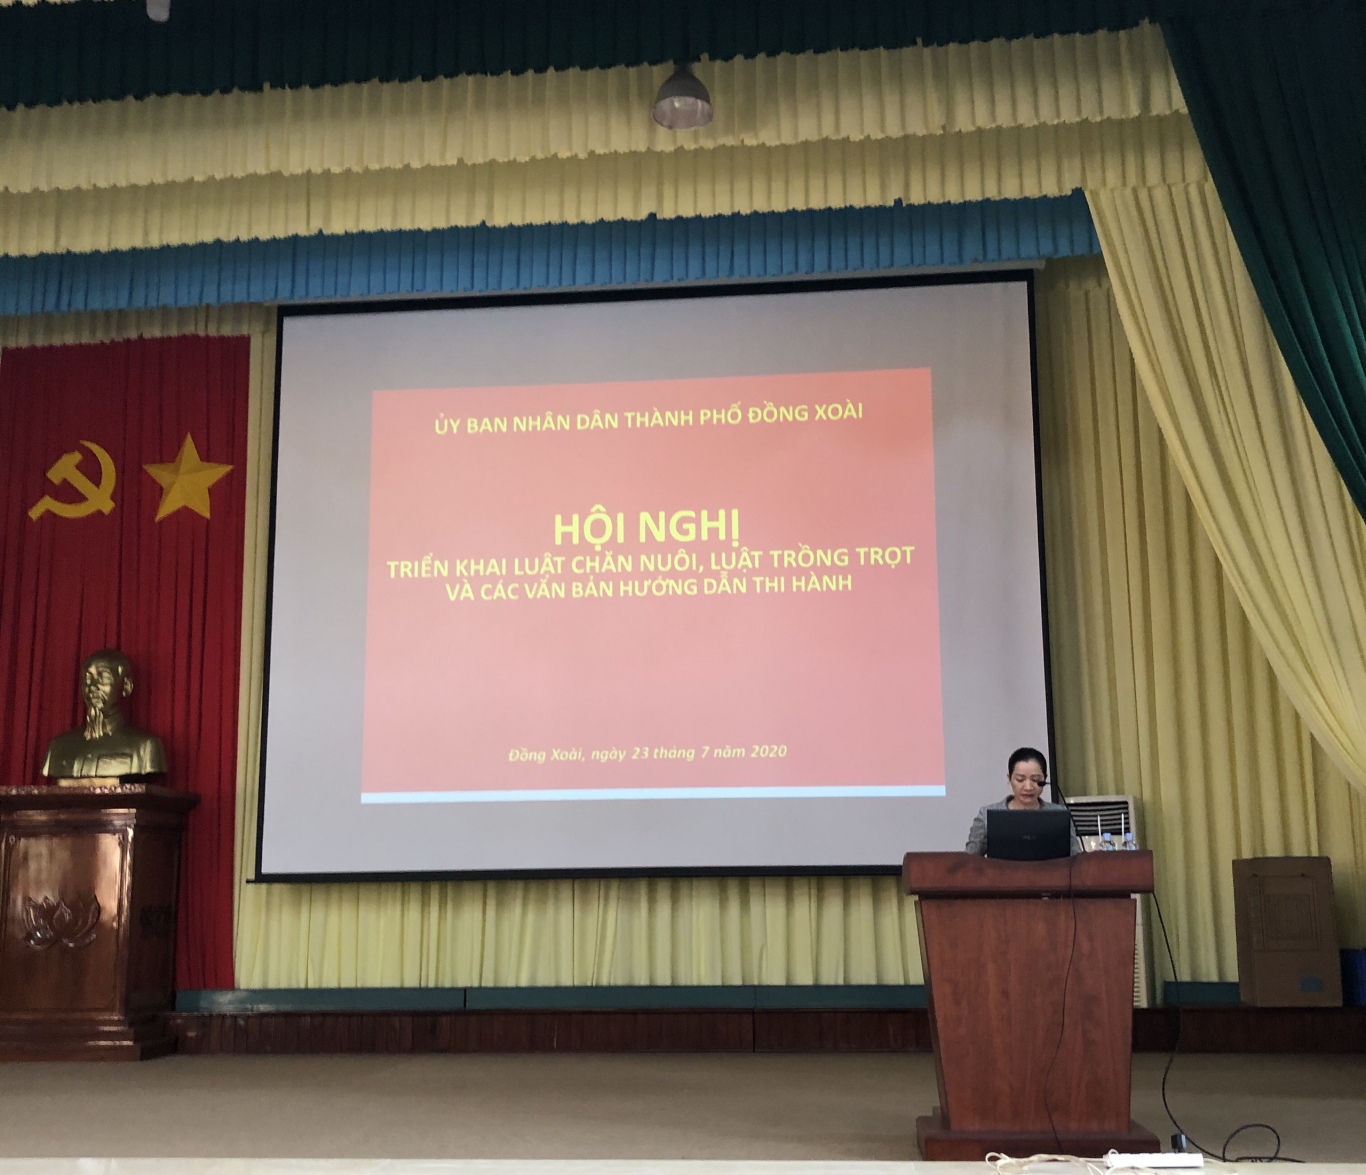 Đồng chí Bùi Thị MinhThúy - Phó Chủ tịch UBND thành phố Đồng Xoài phát biểu tại Hội nghị